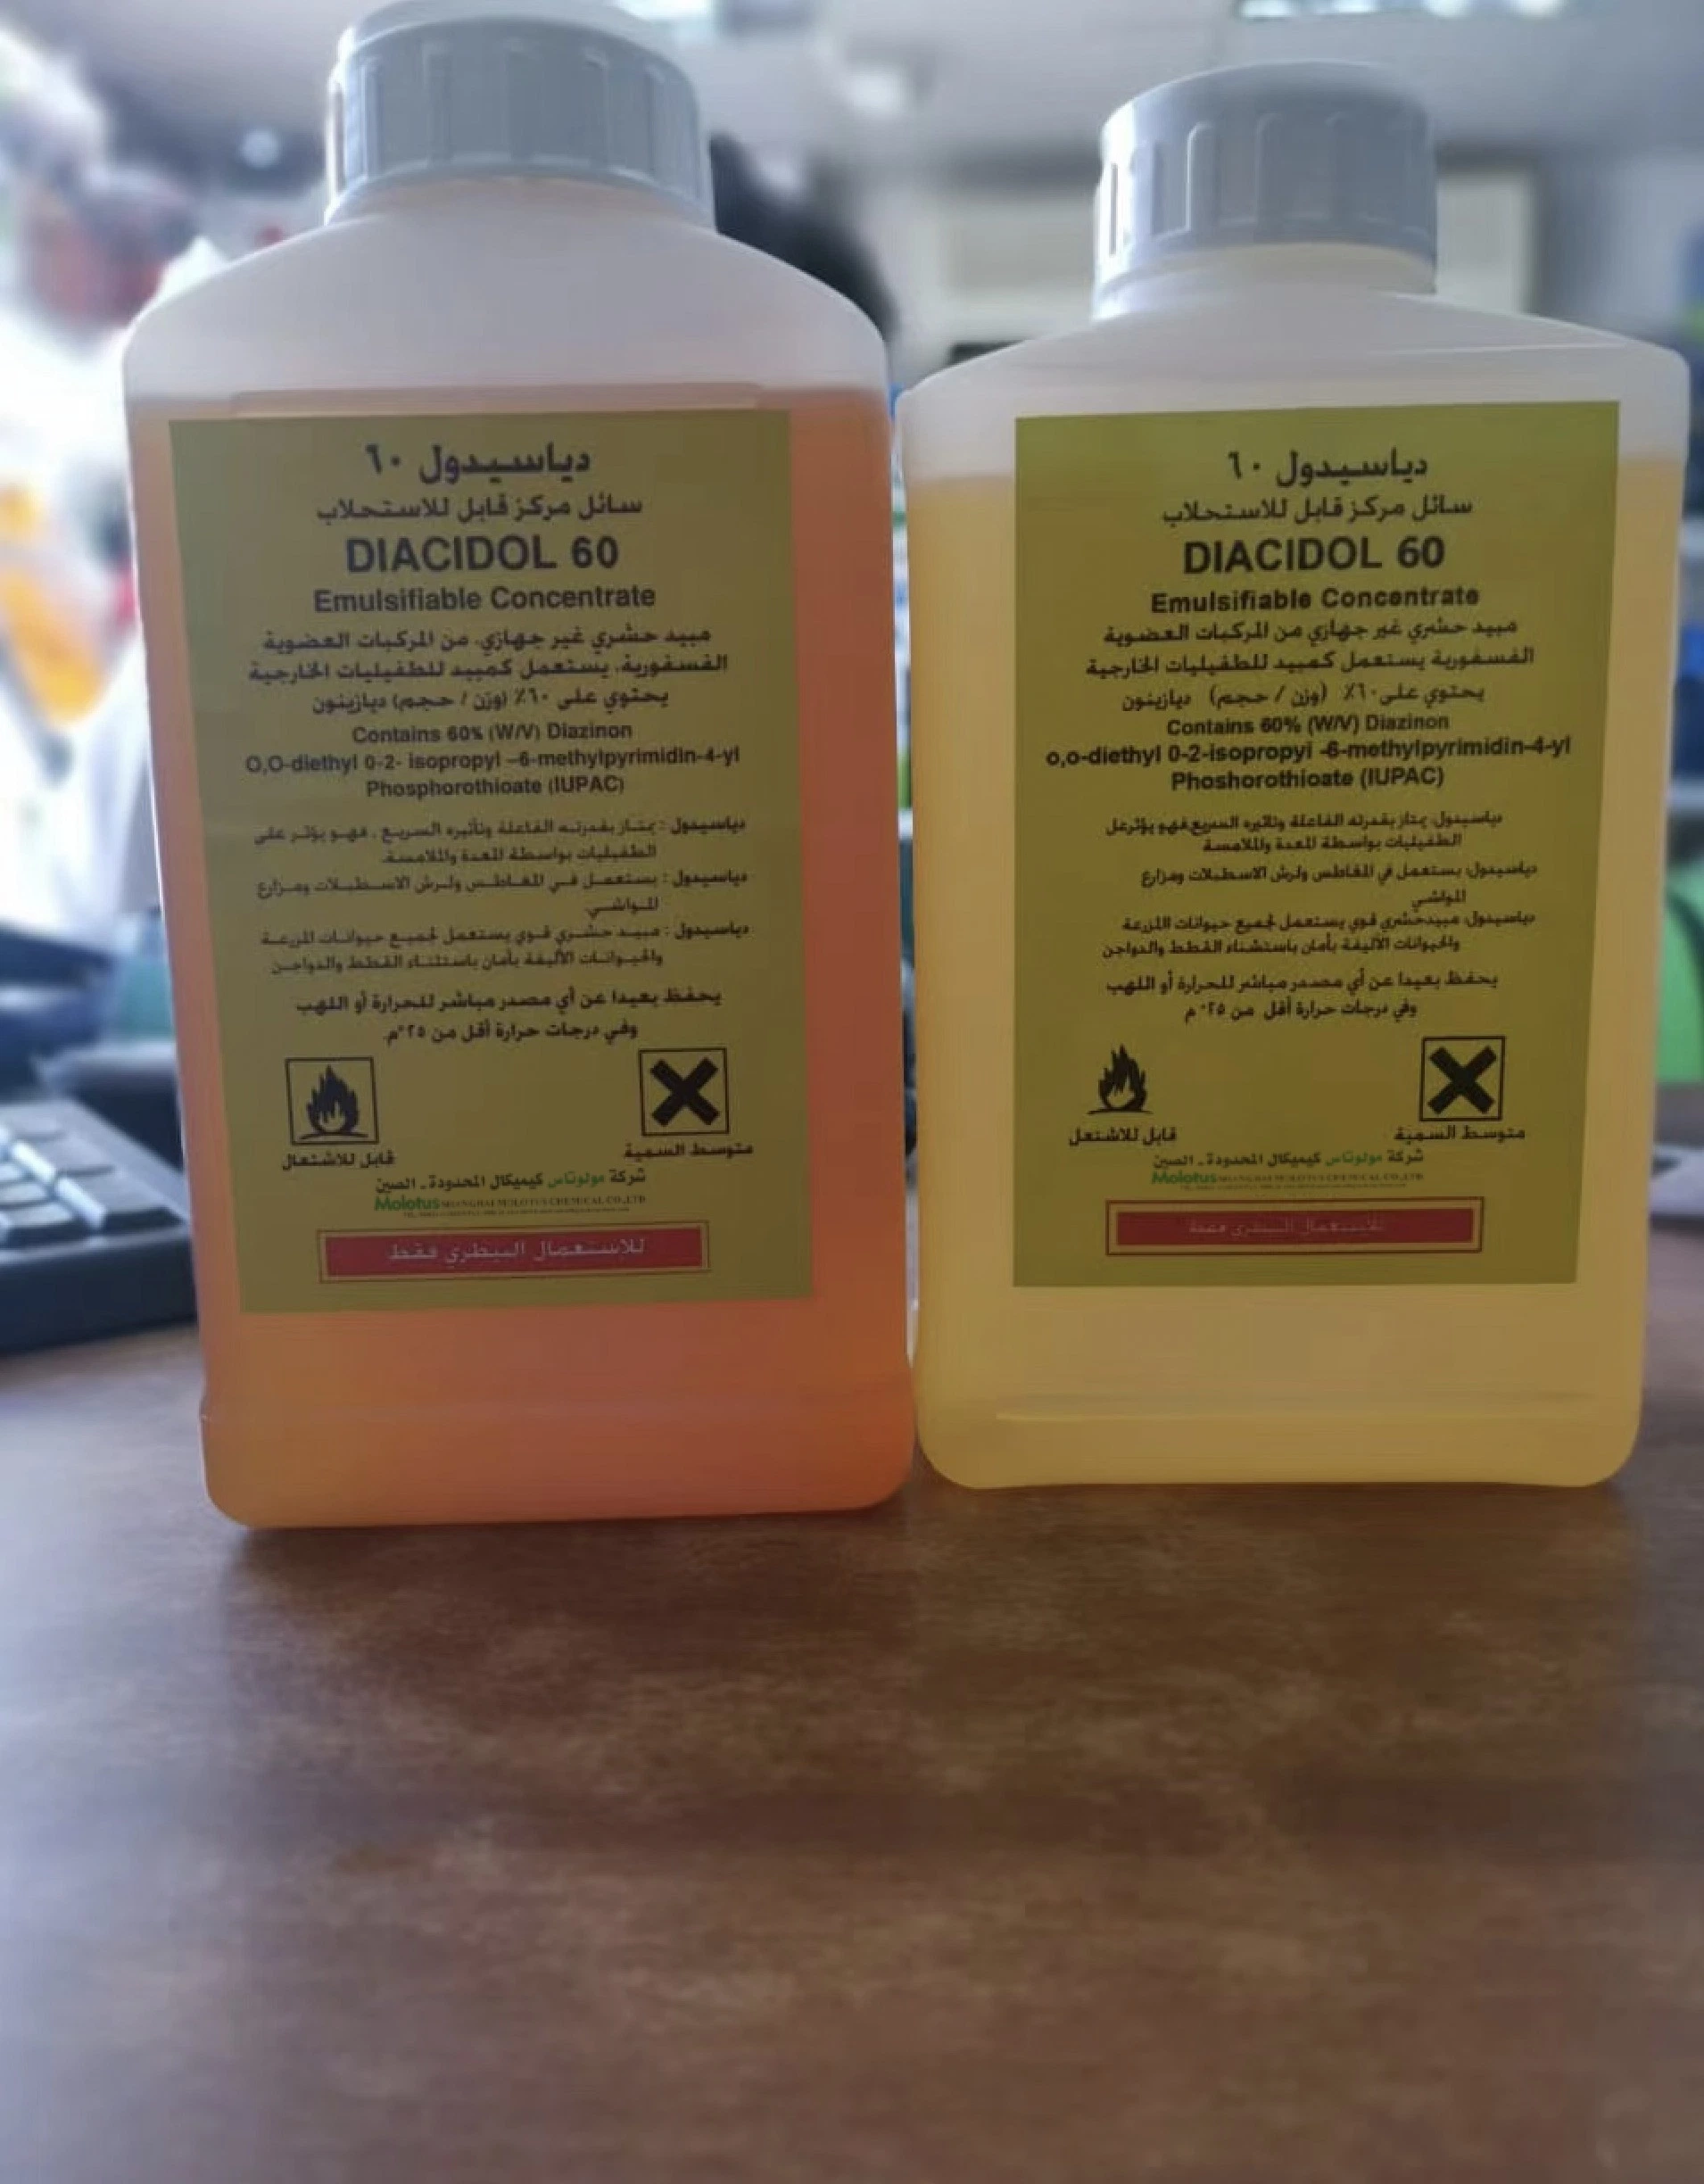 Los insecticidas diazinón 60%Ec proveedores de productos químicos agrícolas